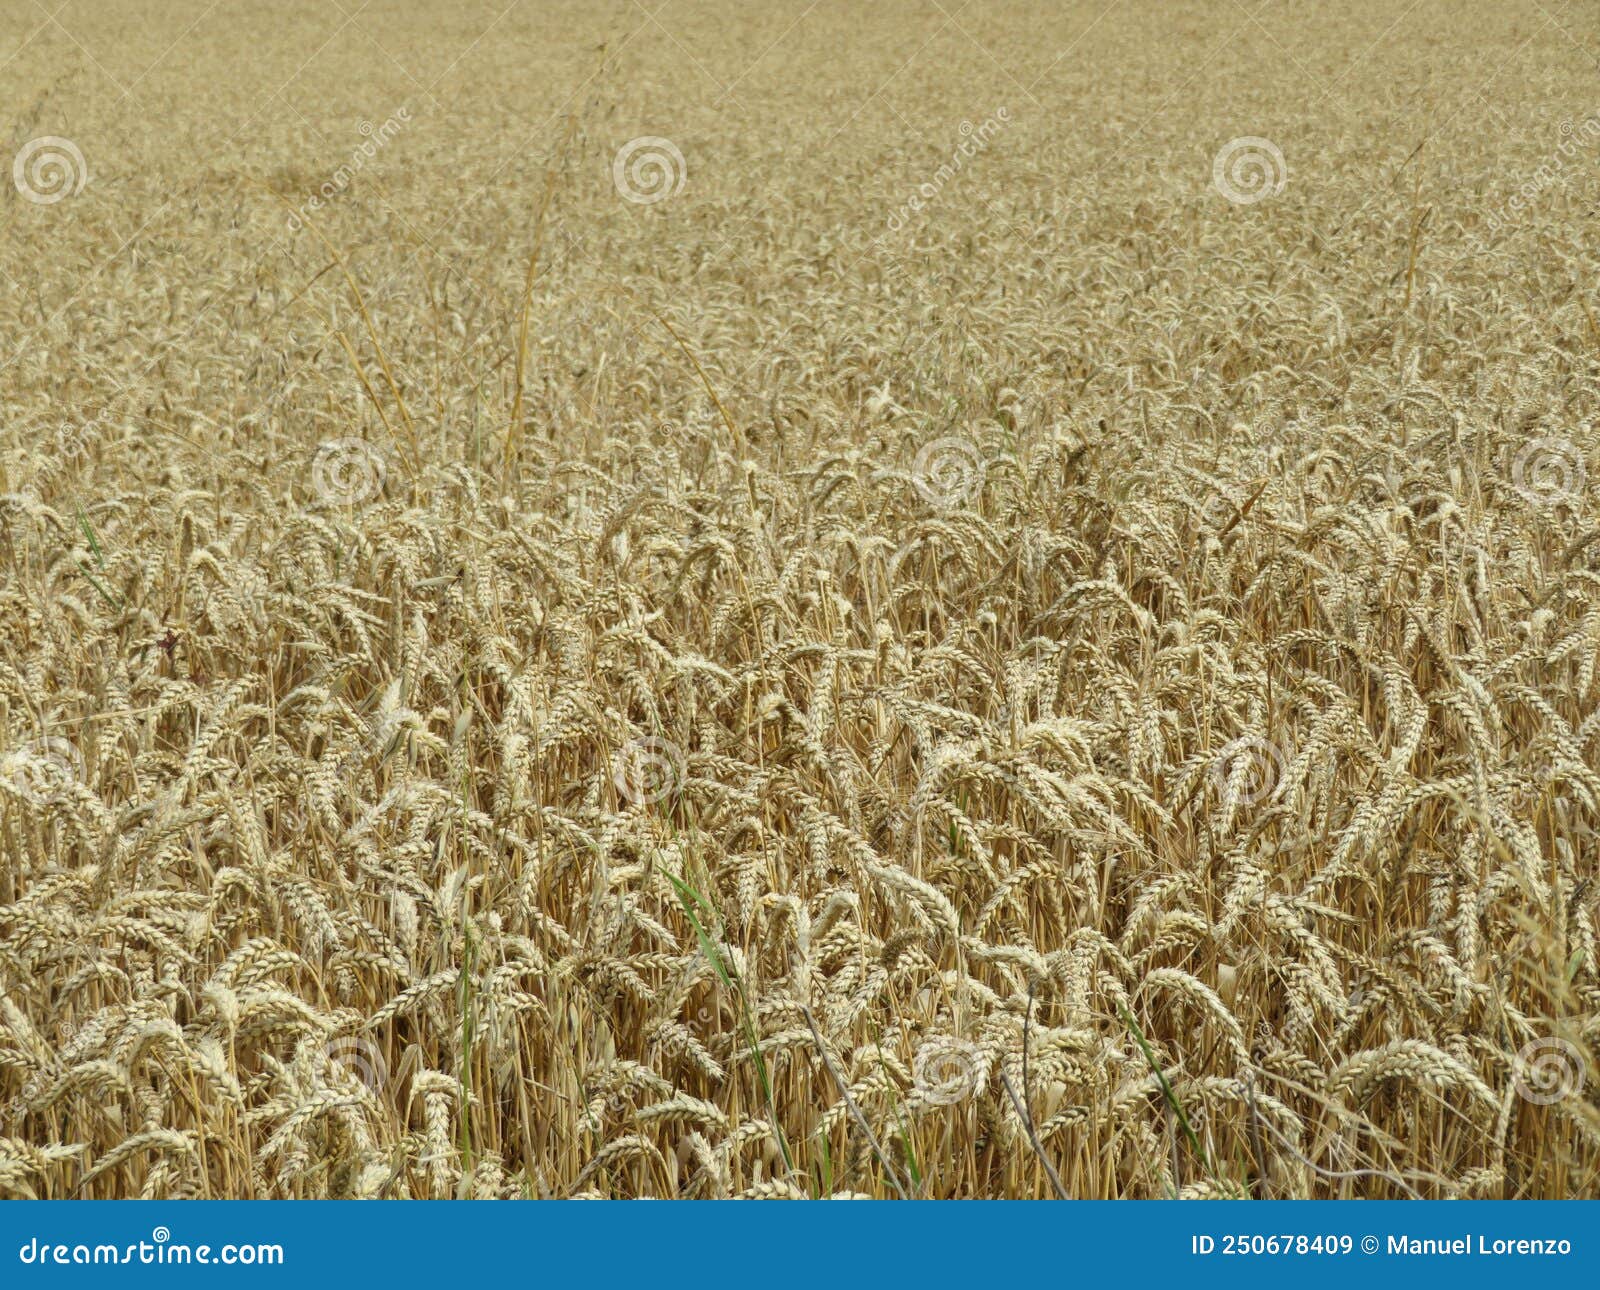 field cereal landscape harvest dry food natural season